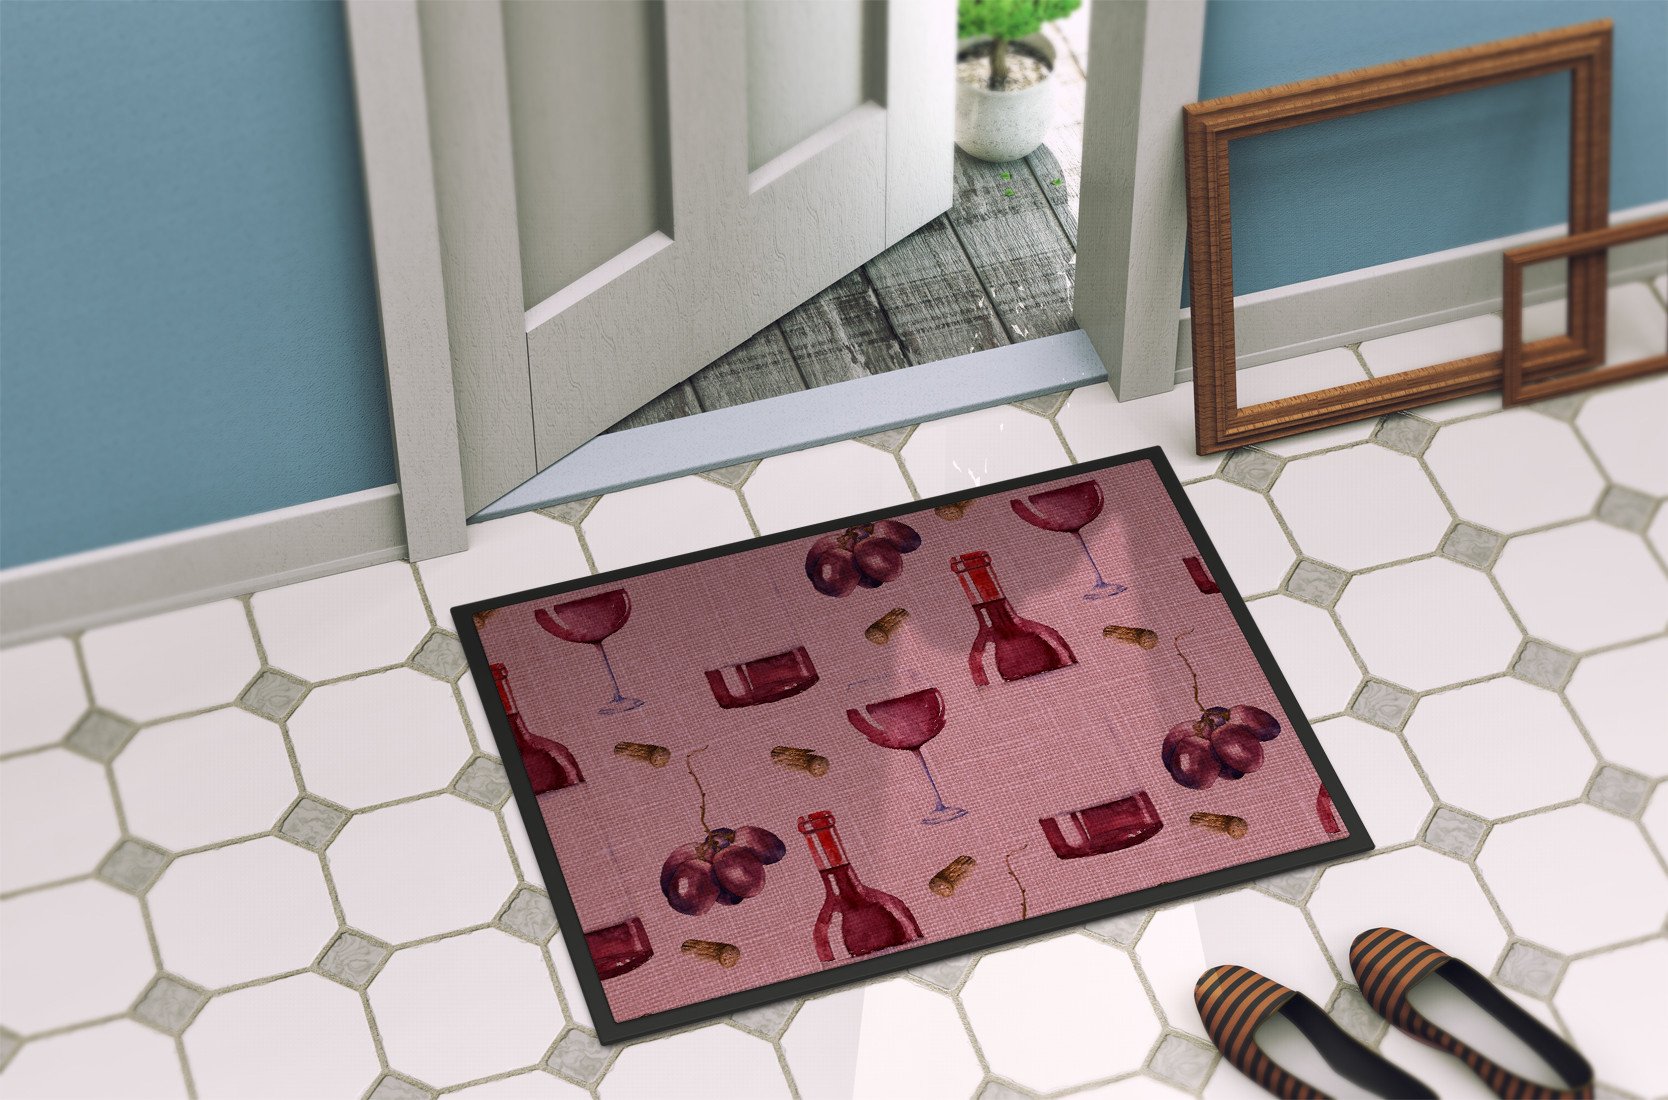 Red Wine on Linen Indoor or Outdoor Mat 24x36 BB5195JMAT by Caroline's Treasures